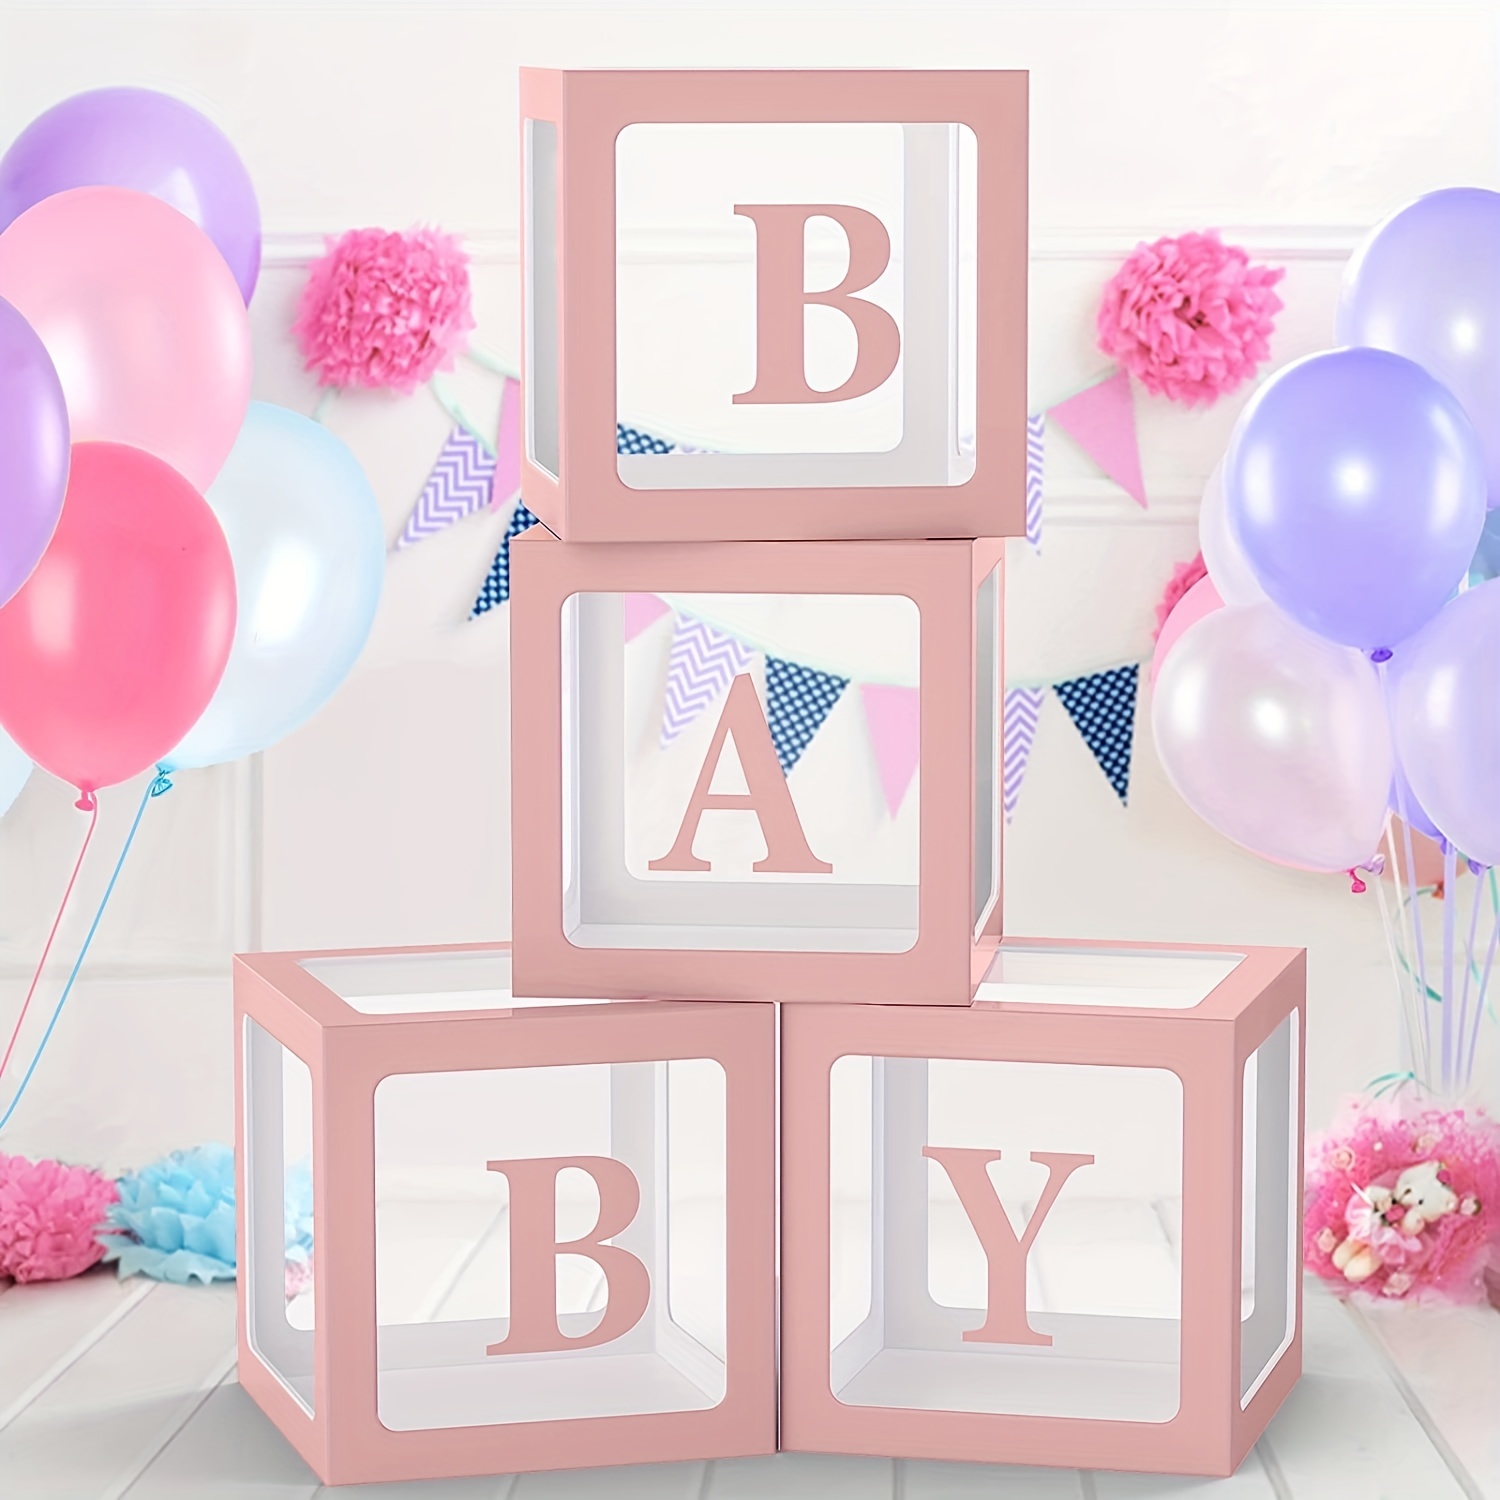  Cajas de bebé con letras para baby shower, 6 cajas  transparentes con 2 juegos de letras A-Z+B y 45 globos para decoración de baby  shower, bloque de fiesta de cumpleaños, decoración